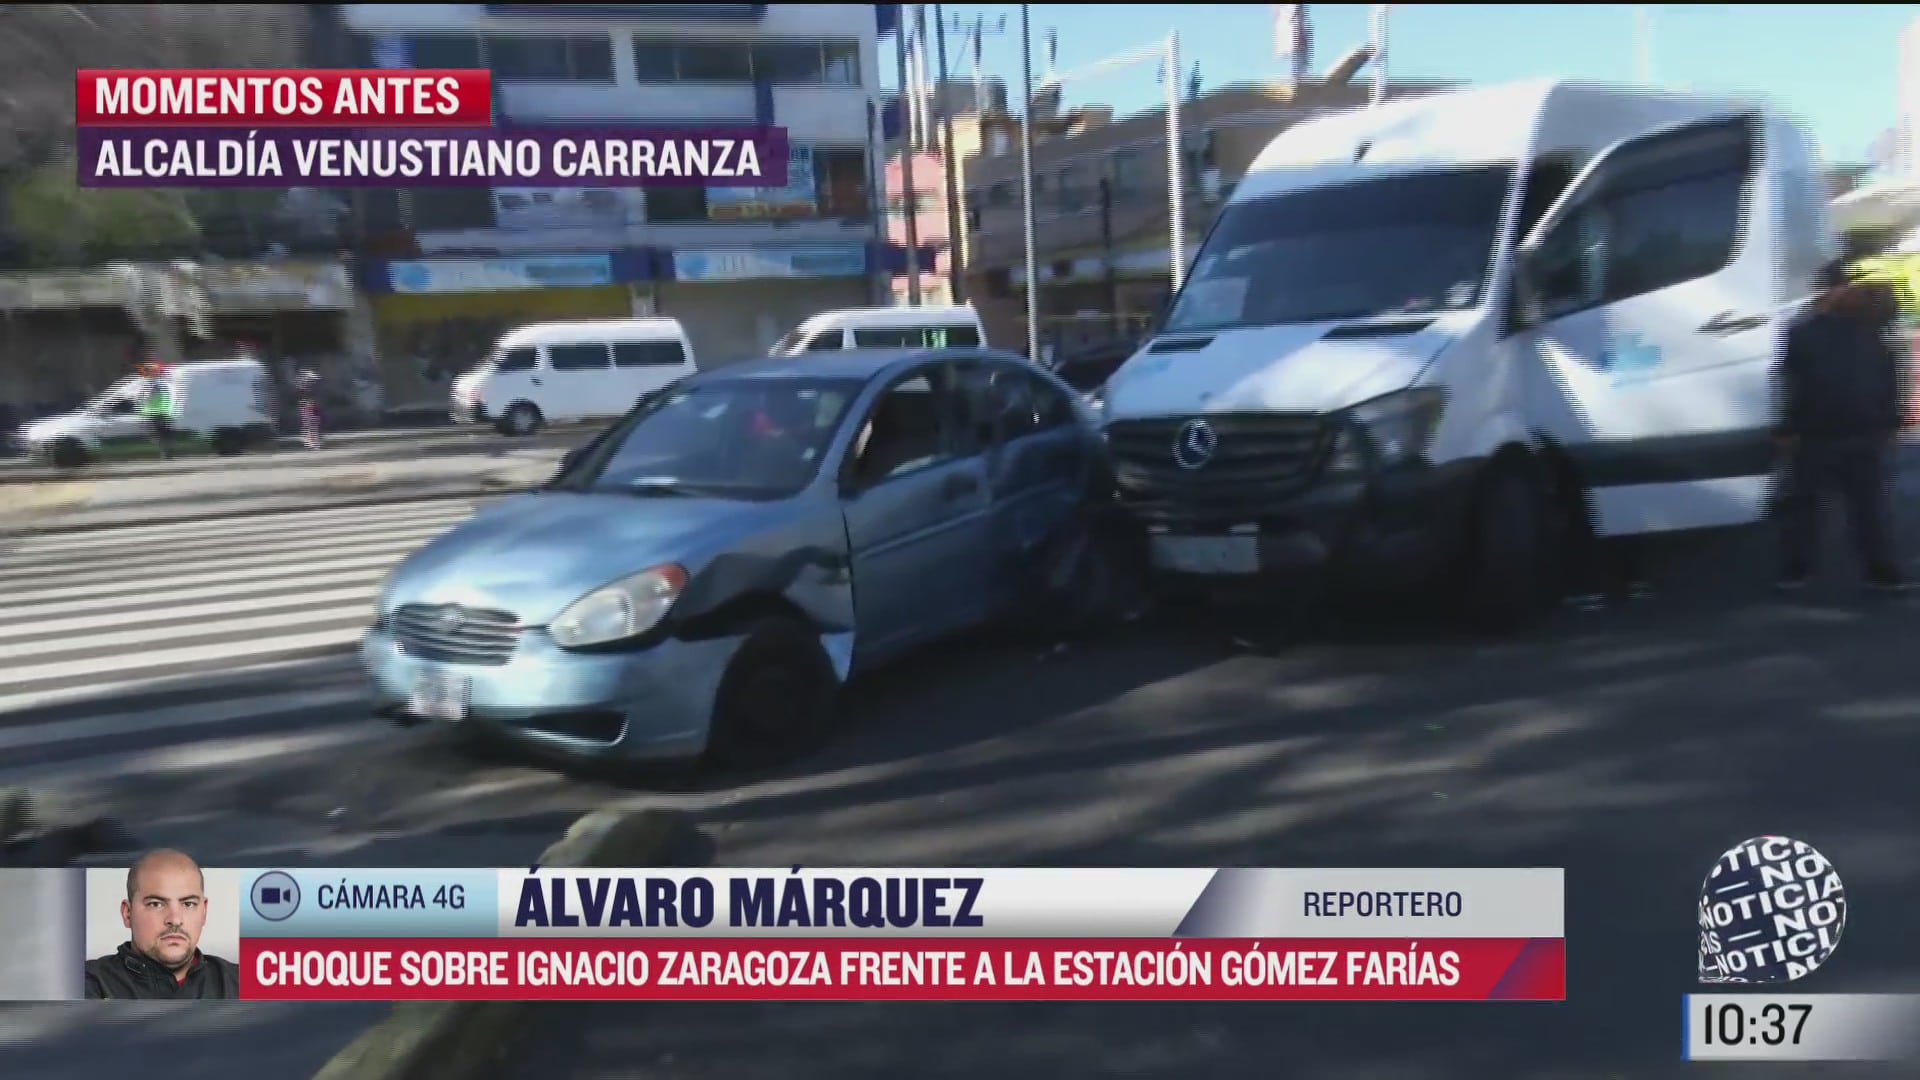 unidad de transporte publico choca contra auto en la calzada ignacio zaragoza